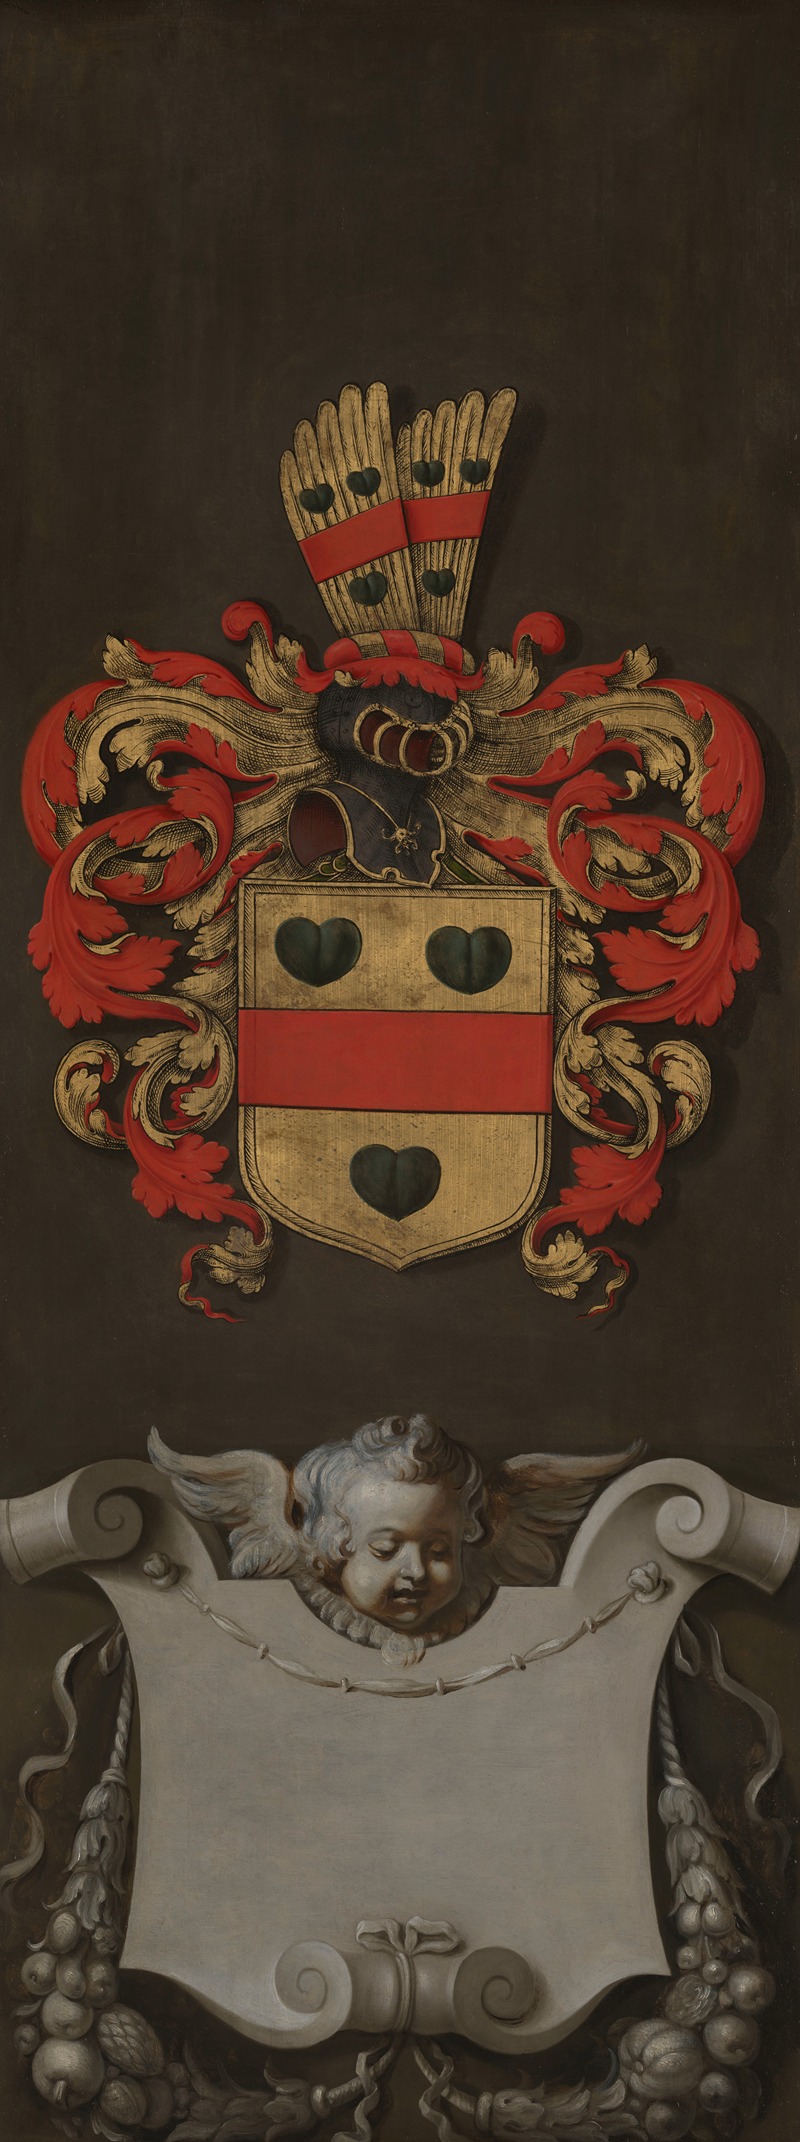 Peter Paul Rubens - Coat of Arms of Nicolaas Rockox